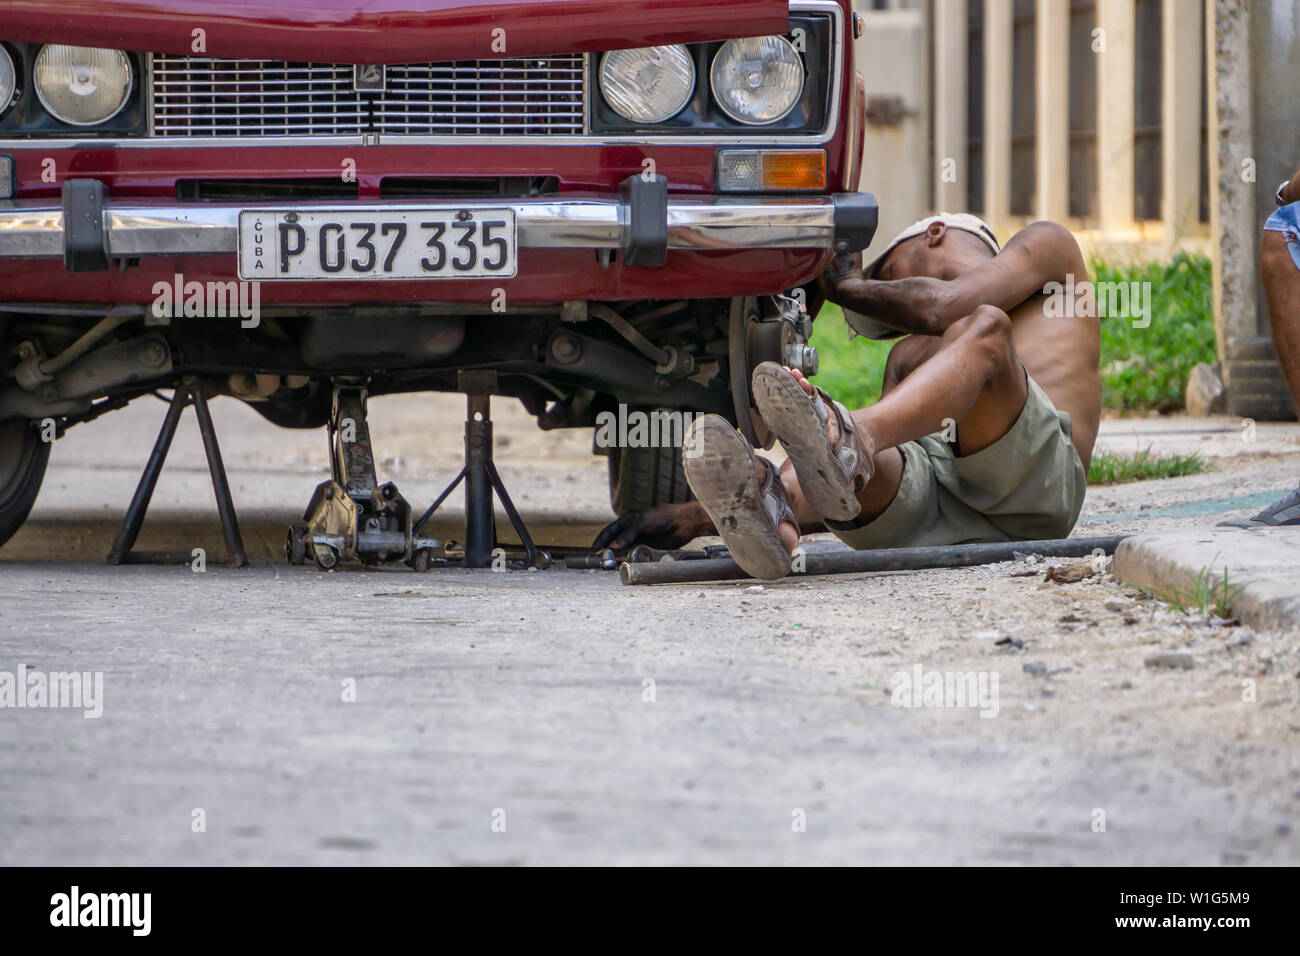 L'Avana, Cuba - Maggio 17, 2019: Sporco auto cubano meccanico è lavorare sotto il veicolo per le strade della vecchia Havana City durante una calda giornata di sole. Foto Stock